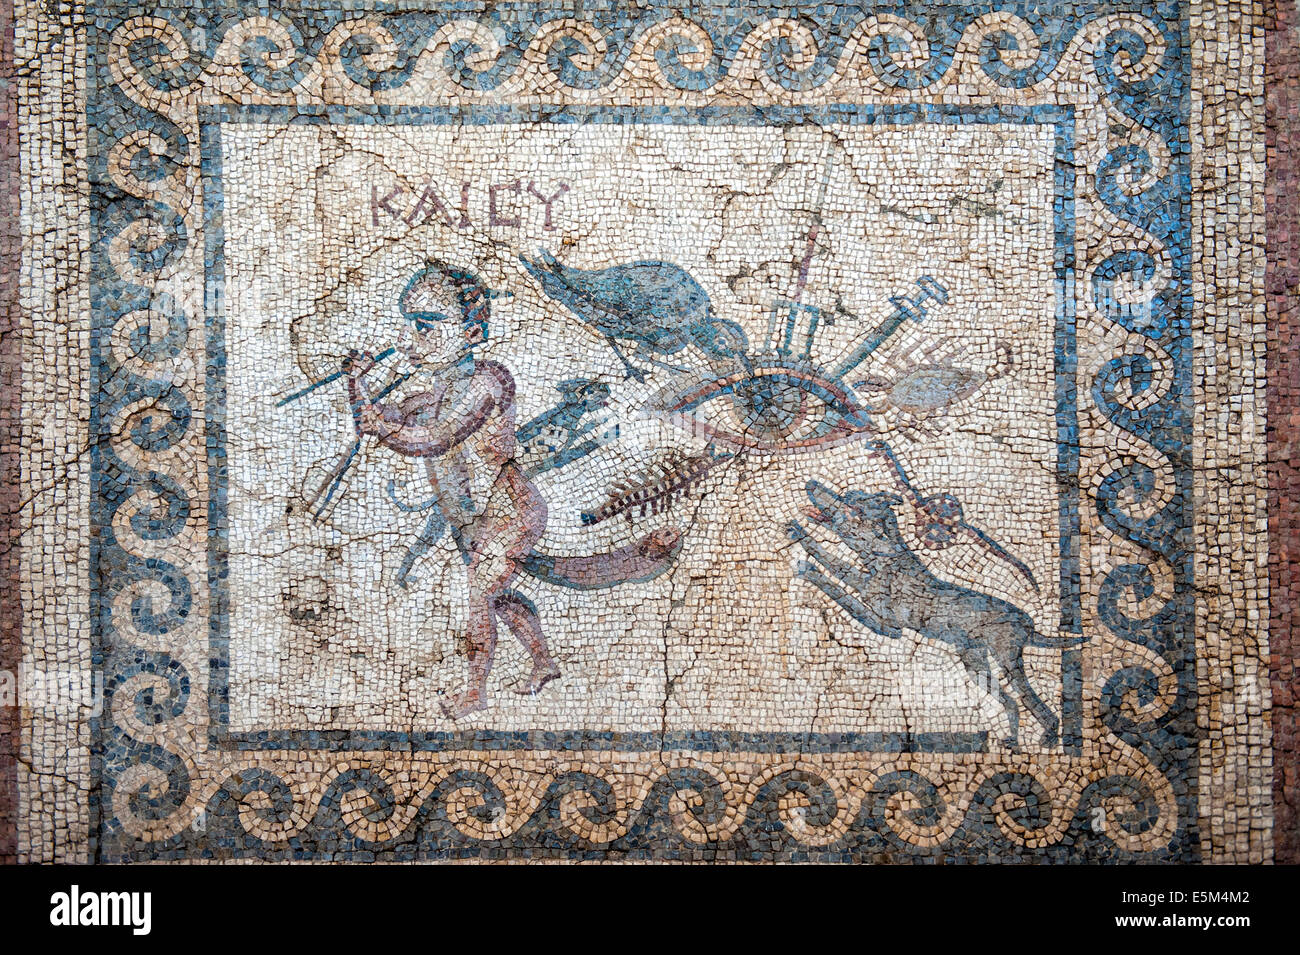 Mosaico del mal de ojo, 2% A.C., Museo de Arqueología de Hatay, Antioquía, provincia de Hatay, en el suroeste de Turquía Foto de stock